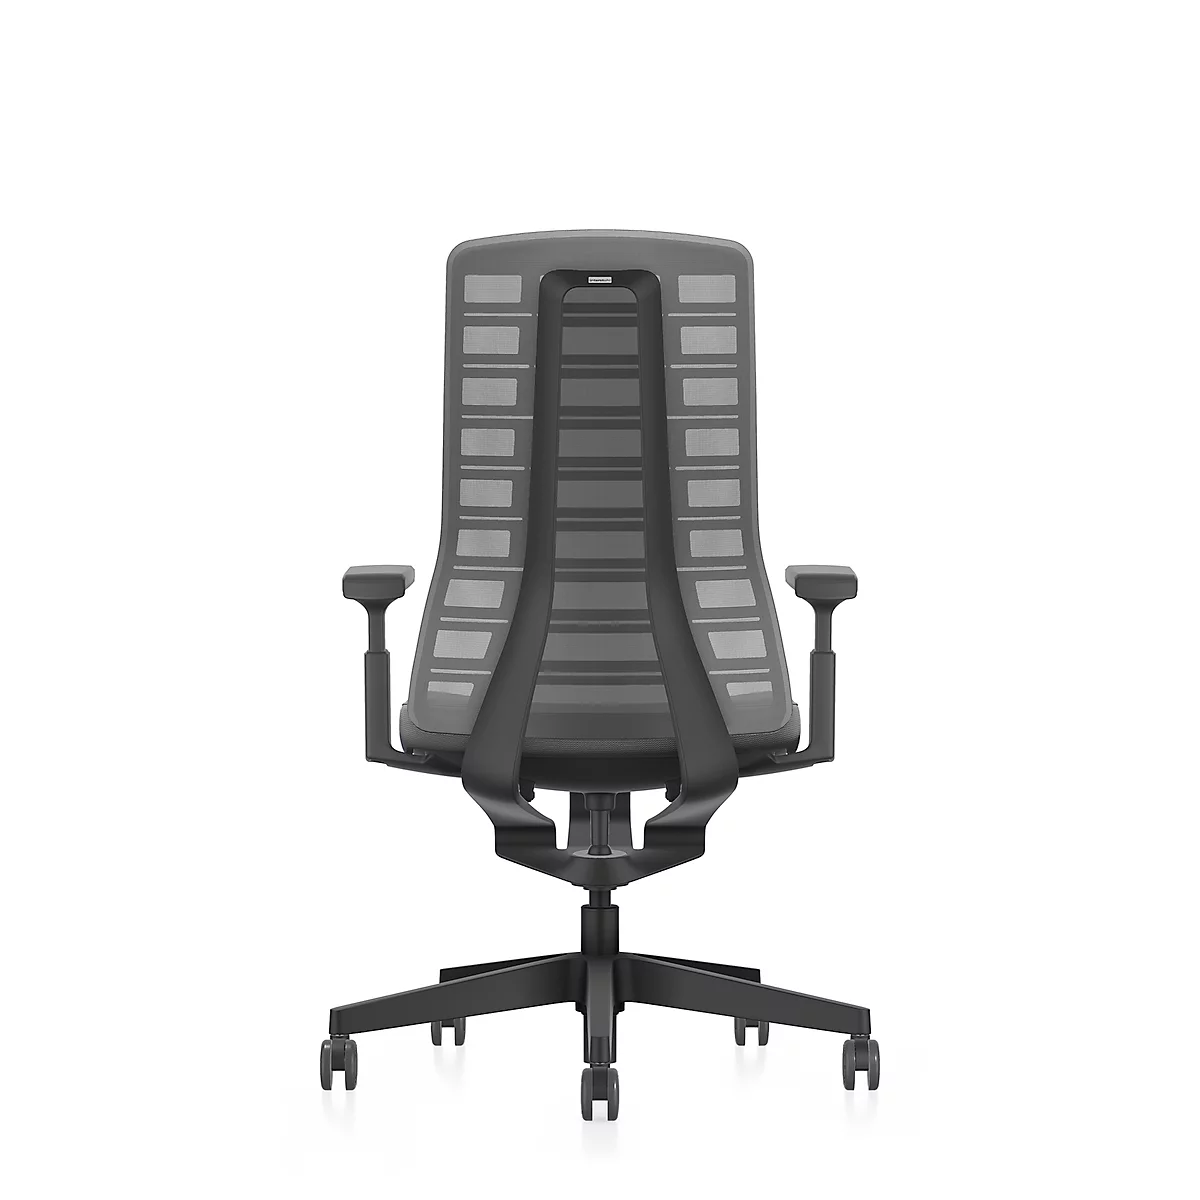 Interstuhl Bürostuhl PUREis3, verstellbare Armlehnen, 3D-Auto-Synchronmechanik, Muldensitz, Netzrücken, eisengrau/schwarz